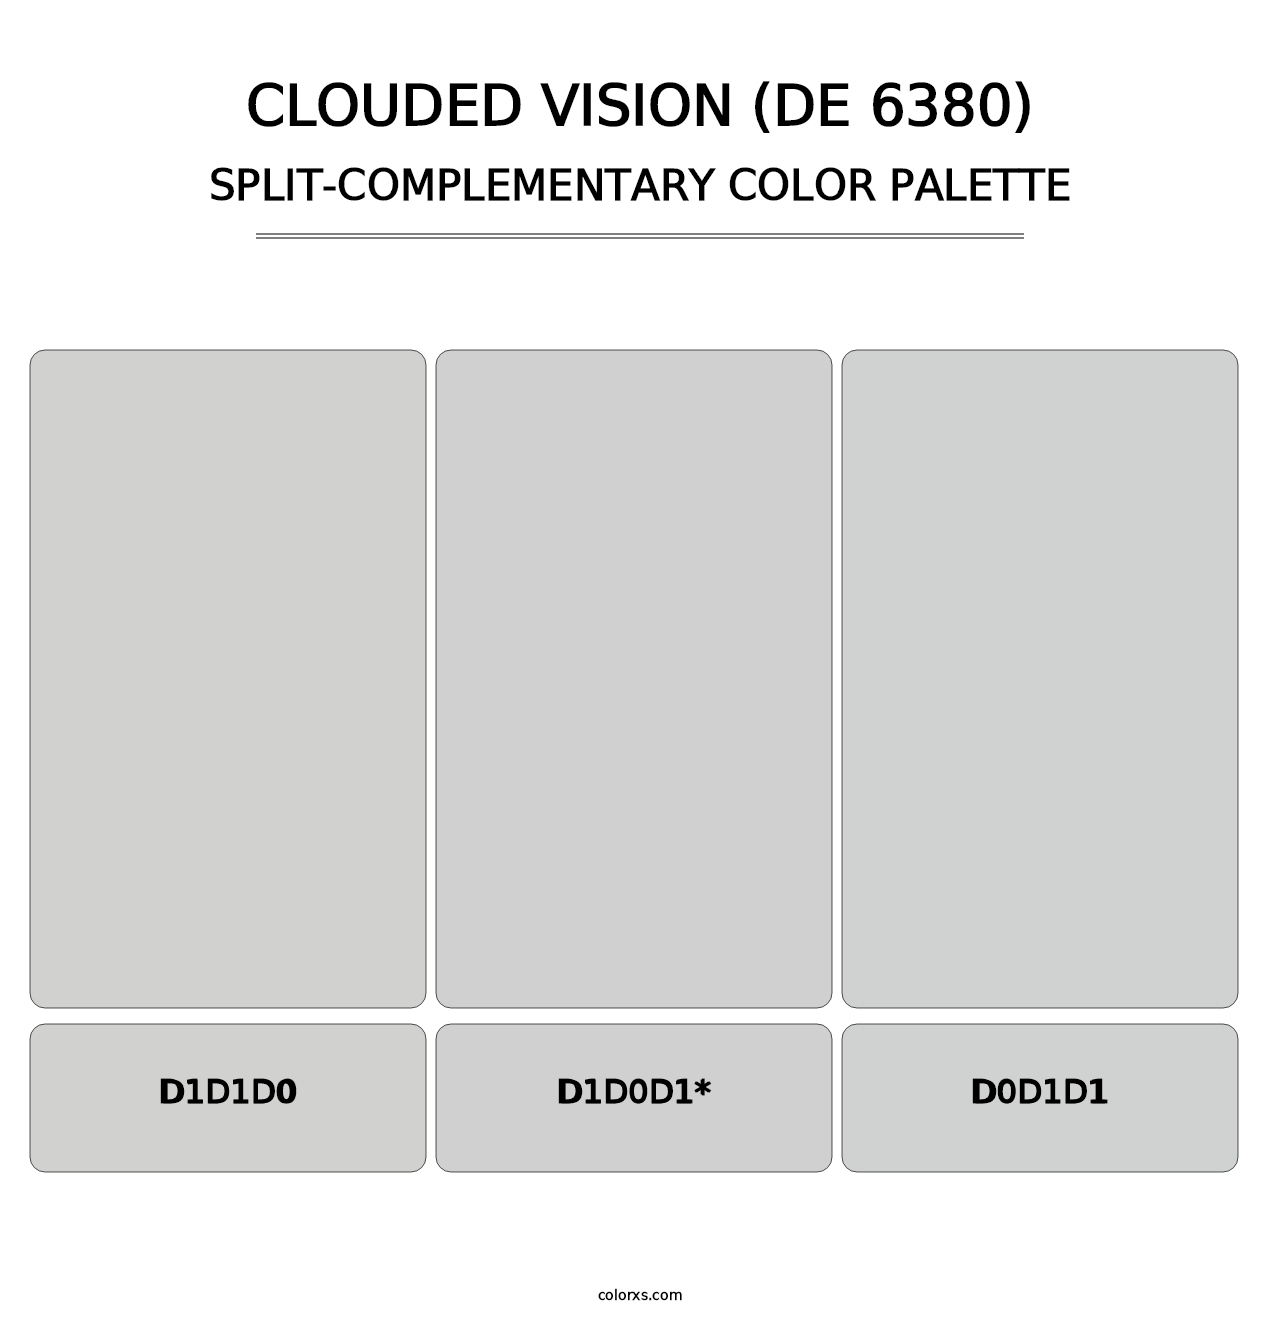 Clouded Vision (DE 6380) - Split-Complementary Color Palette